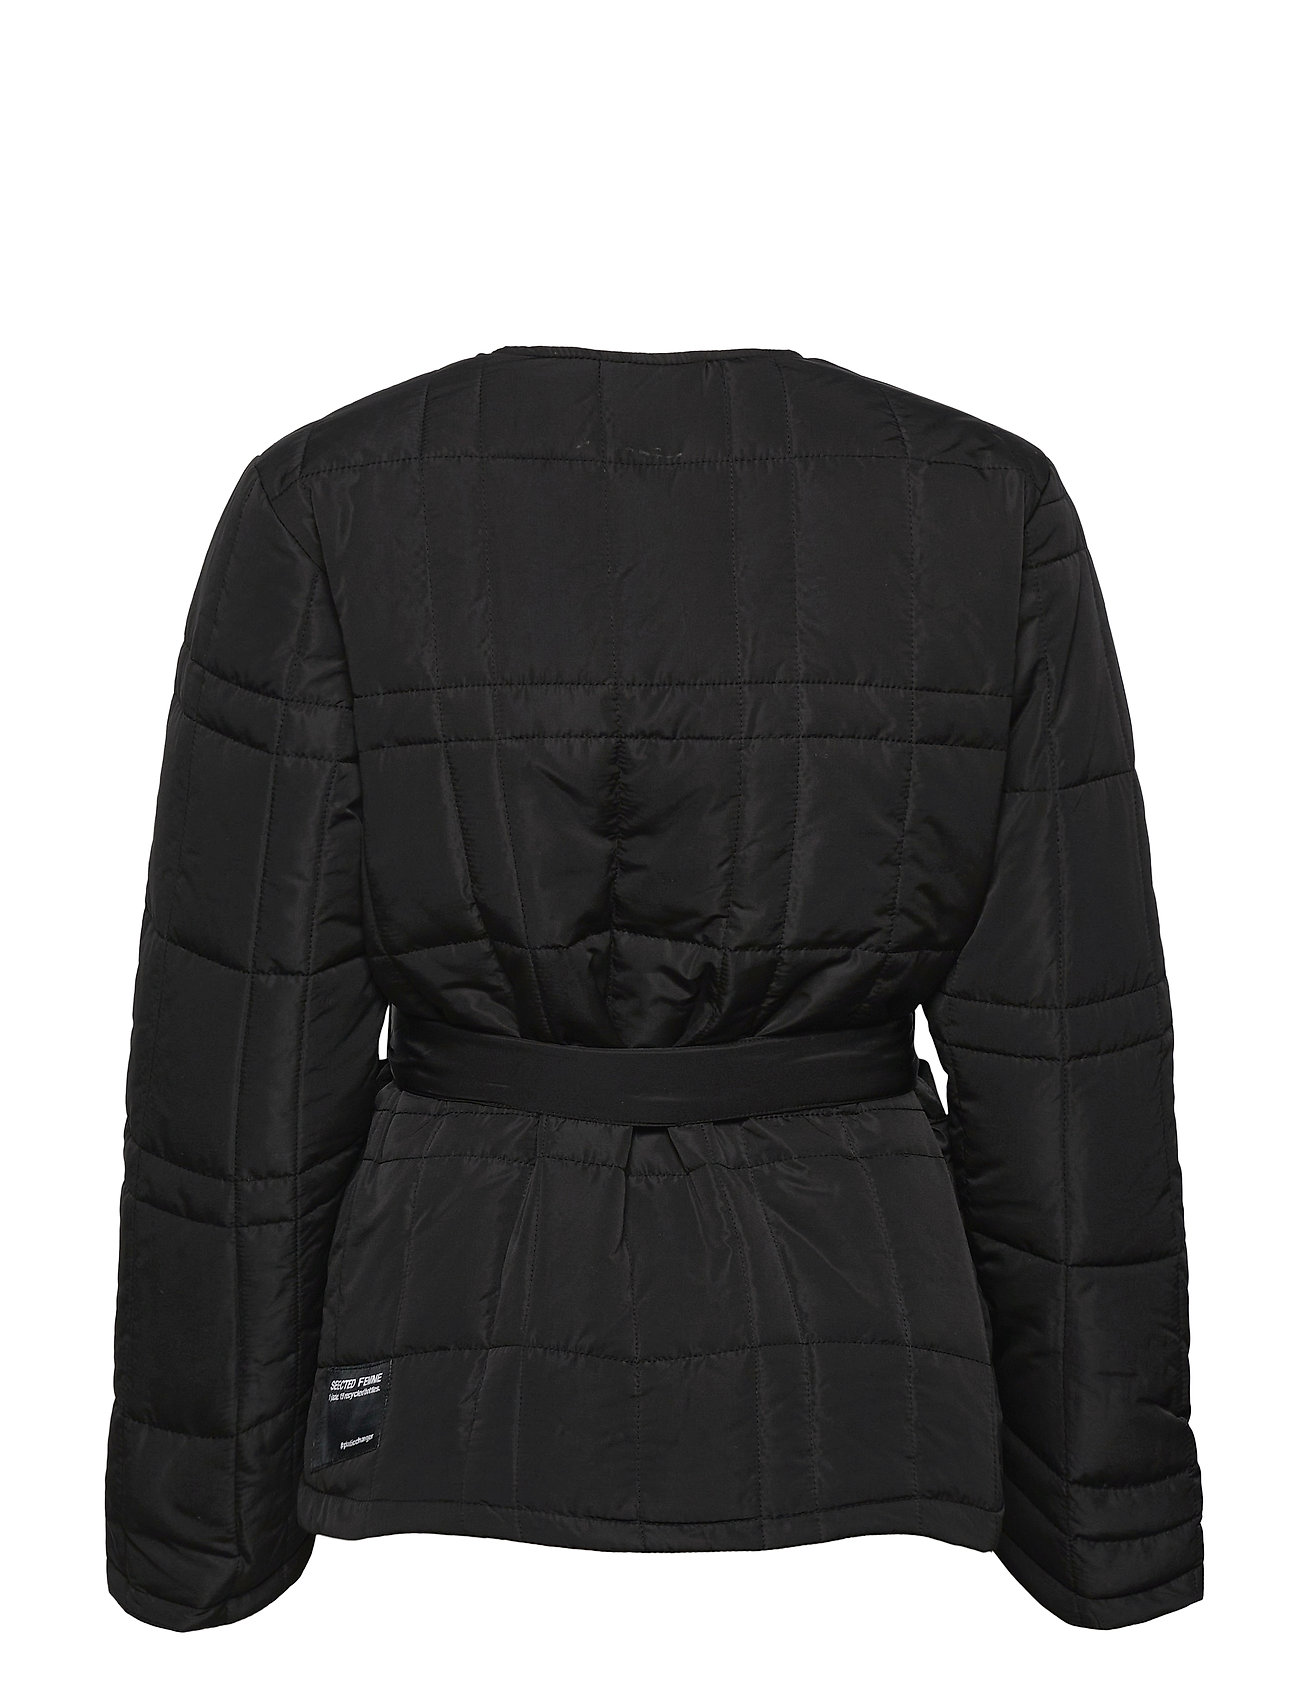 Selected Femme Slfplastic Quilt Spring Jacket B Quiltet Jakke Sort Selected Femme quiltede jakker for dame -